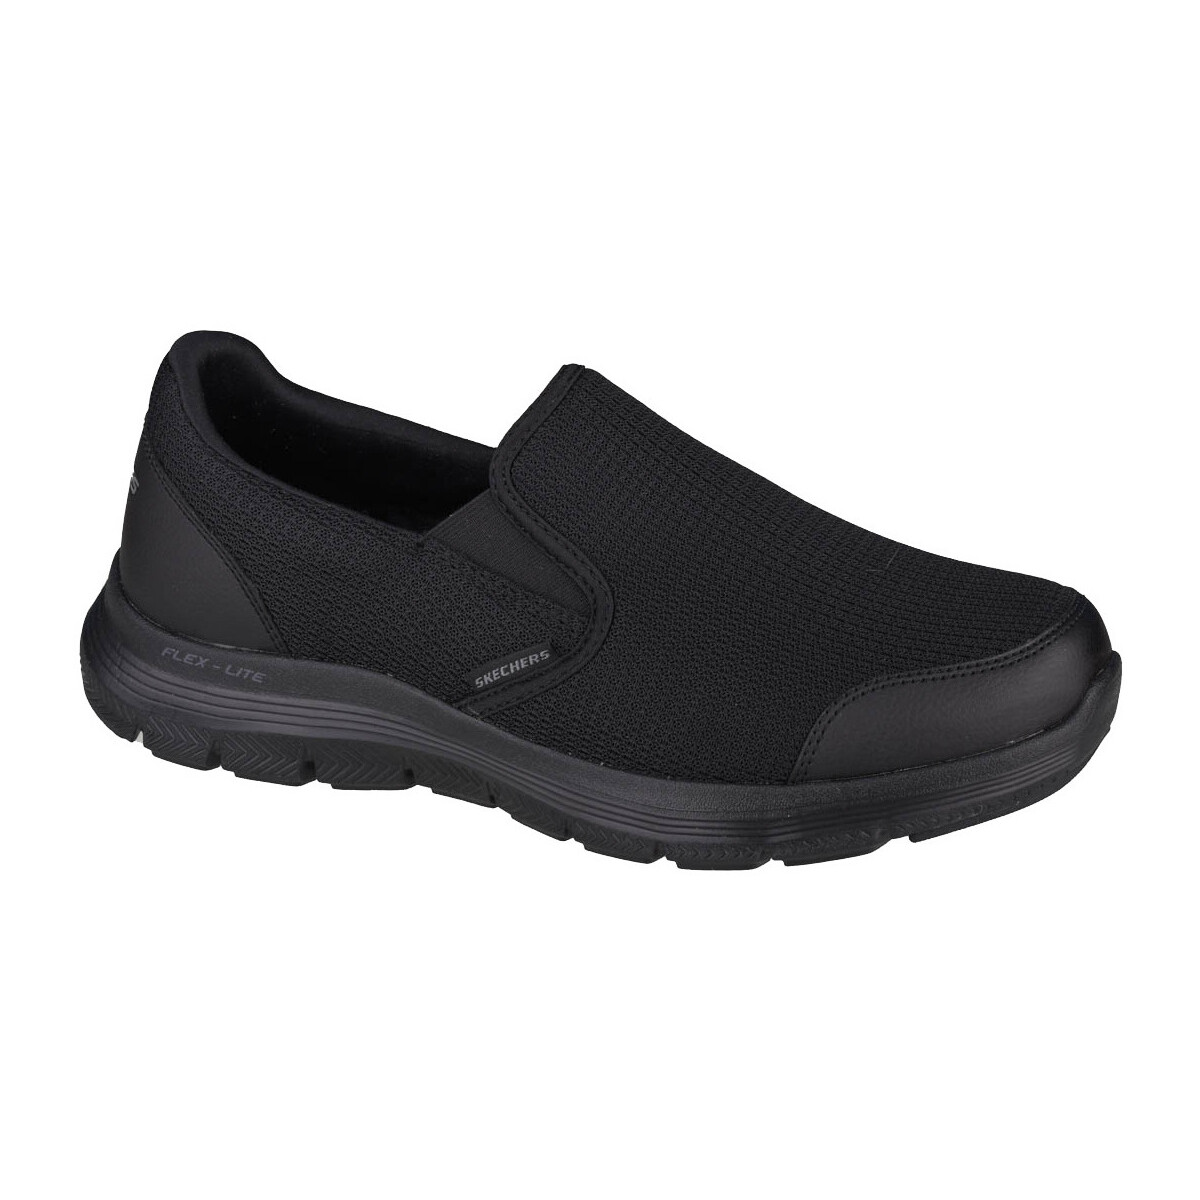 Παπούτσια Άνδρας Χαμηλά Sneakers Skechers Flex Advantage 4.0 Black